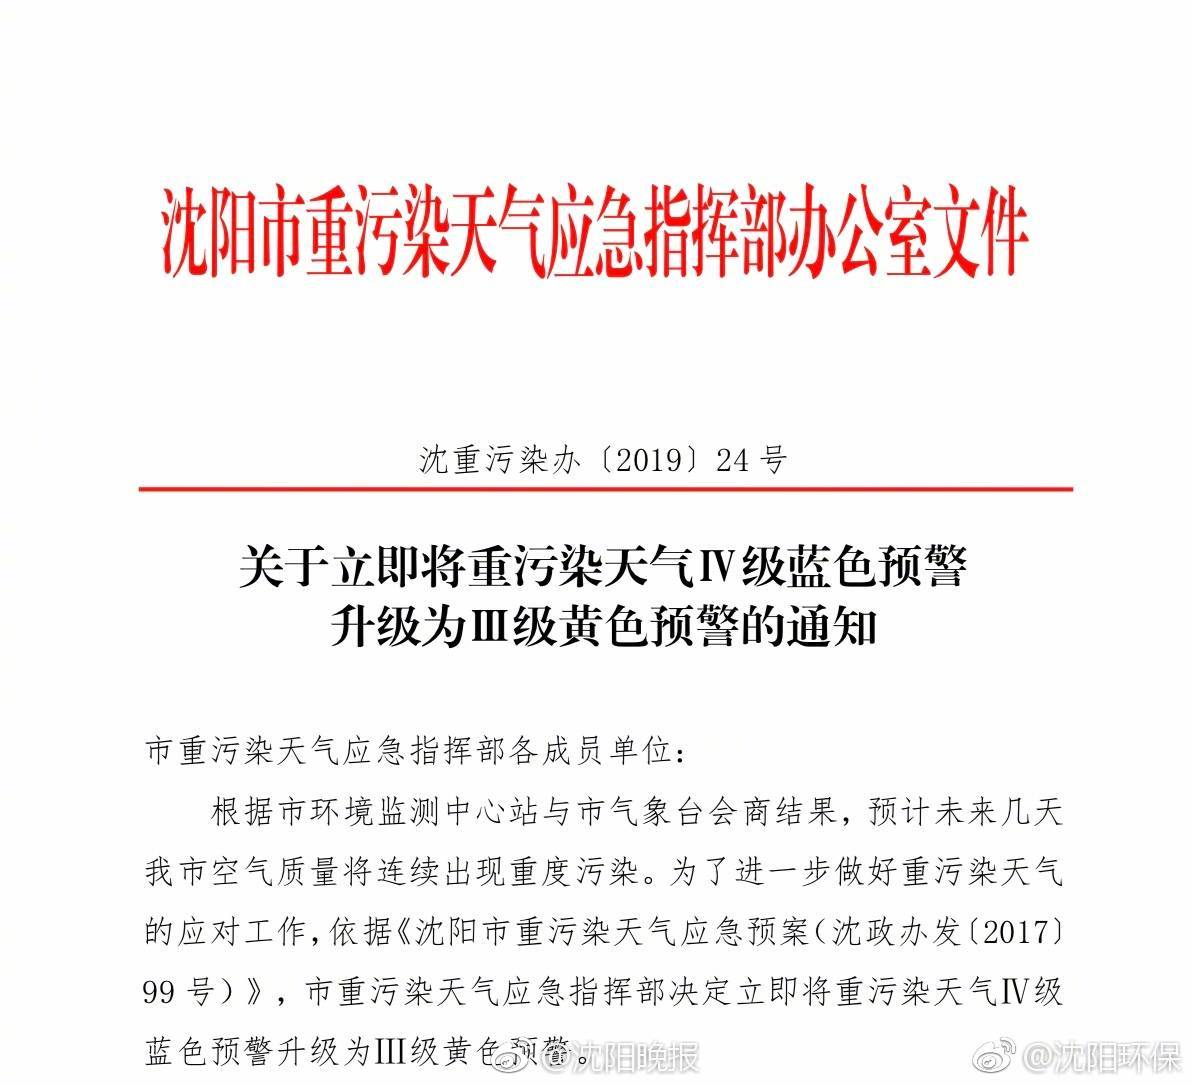 官方回應深圳一大樓發生晃動:未發生地震,正在調查  